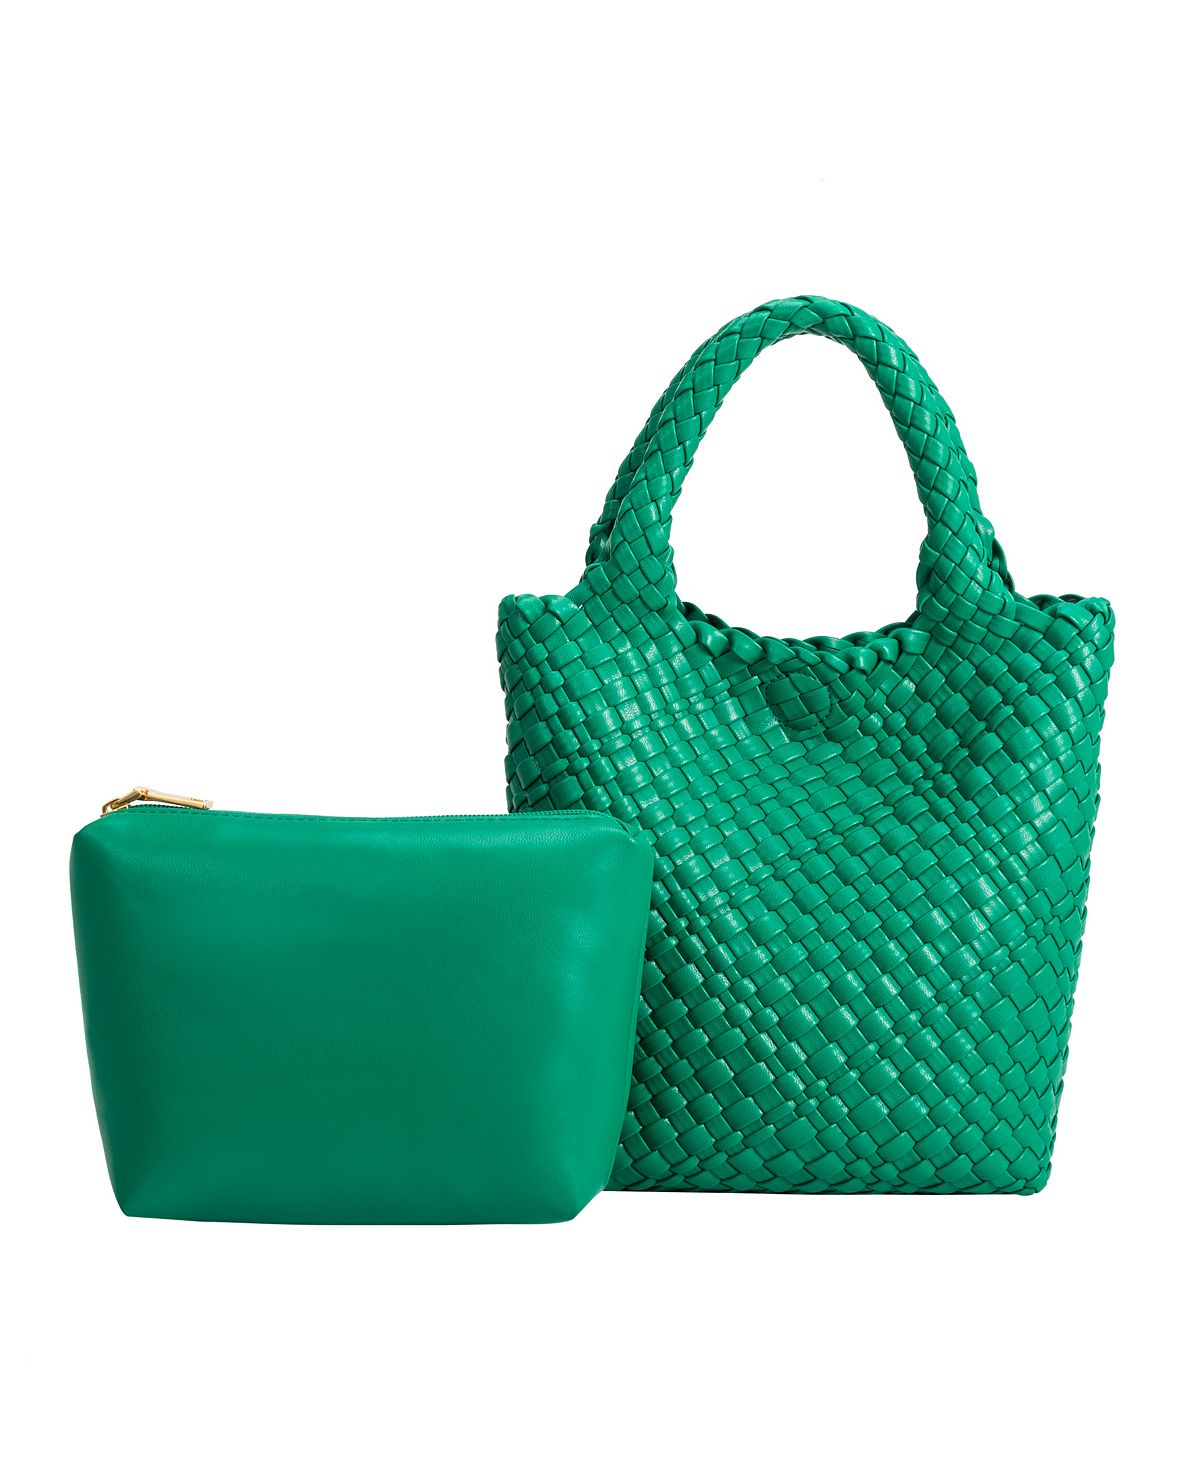 Женская большая сумка Eloise Melie Bianco, зеленый сумка женская florence collection m195 bianco ут 00011228